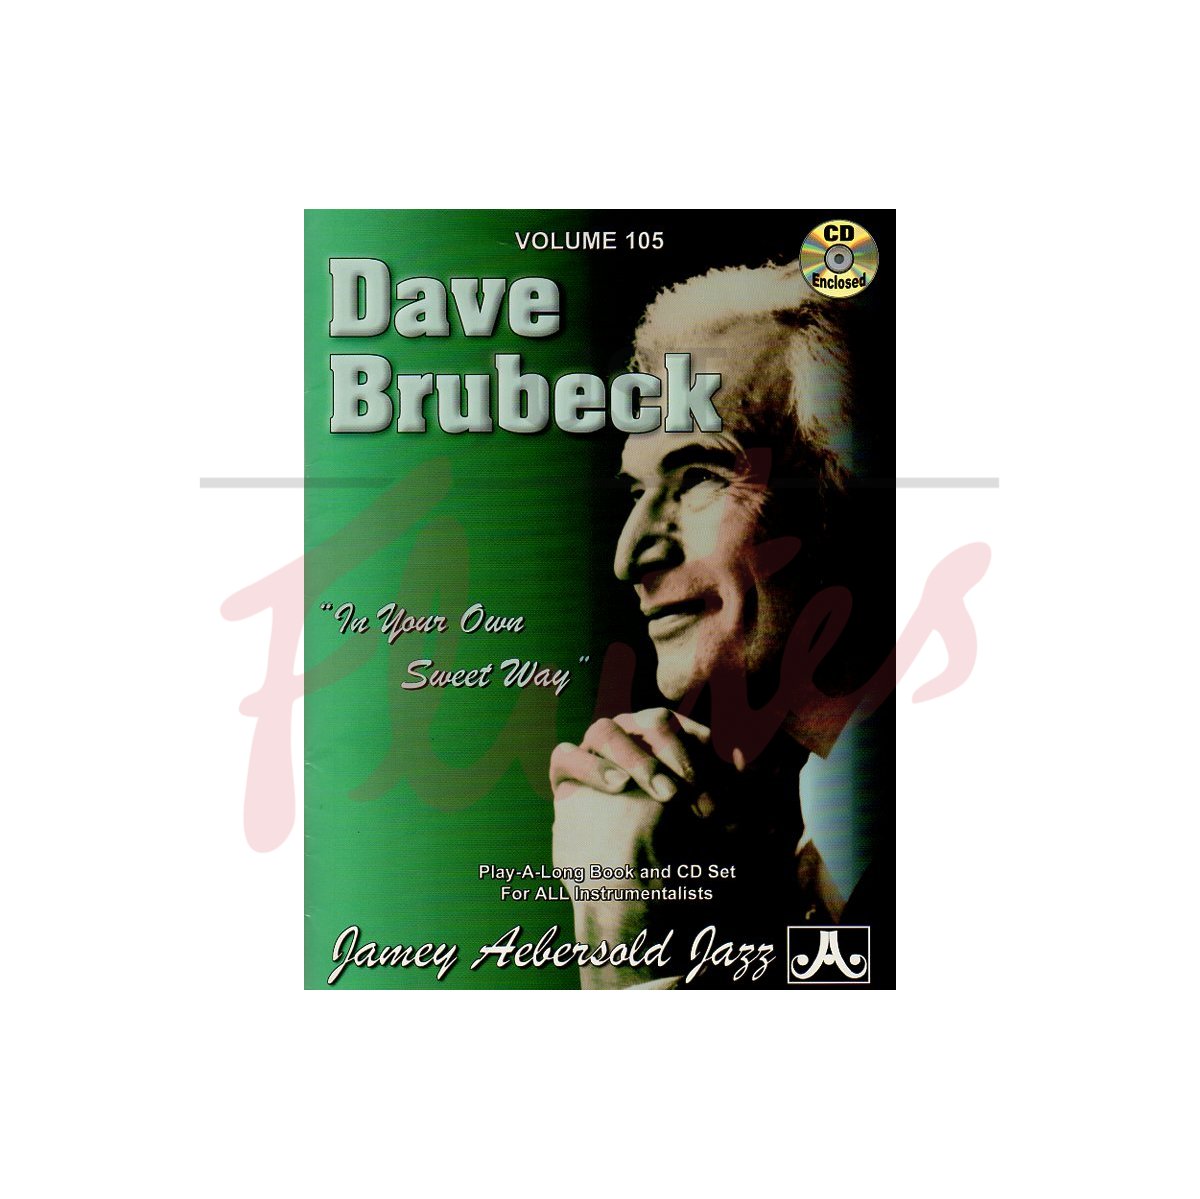 Dave Brubeck Vol.105